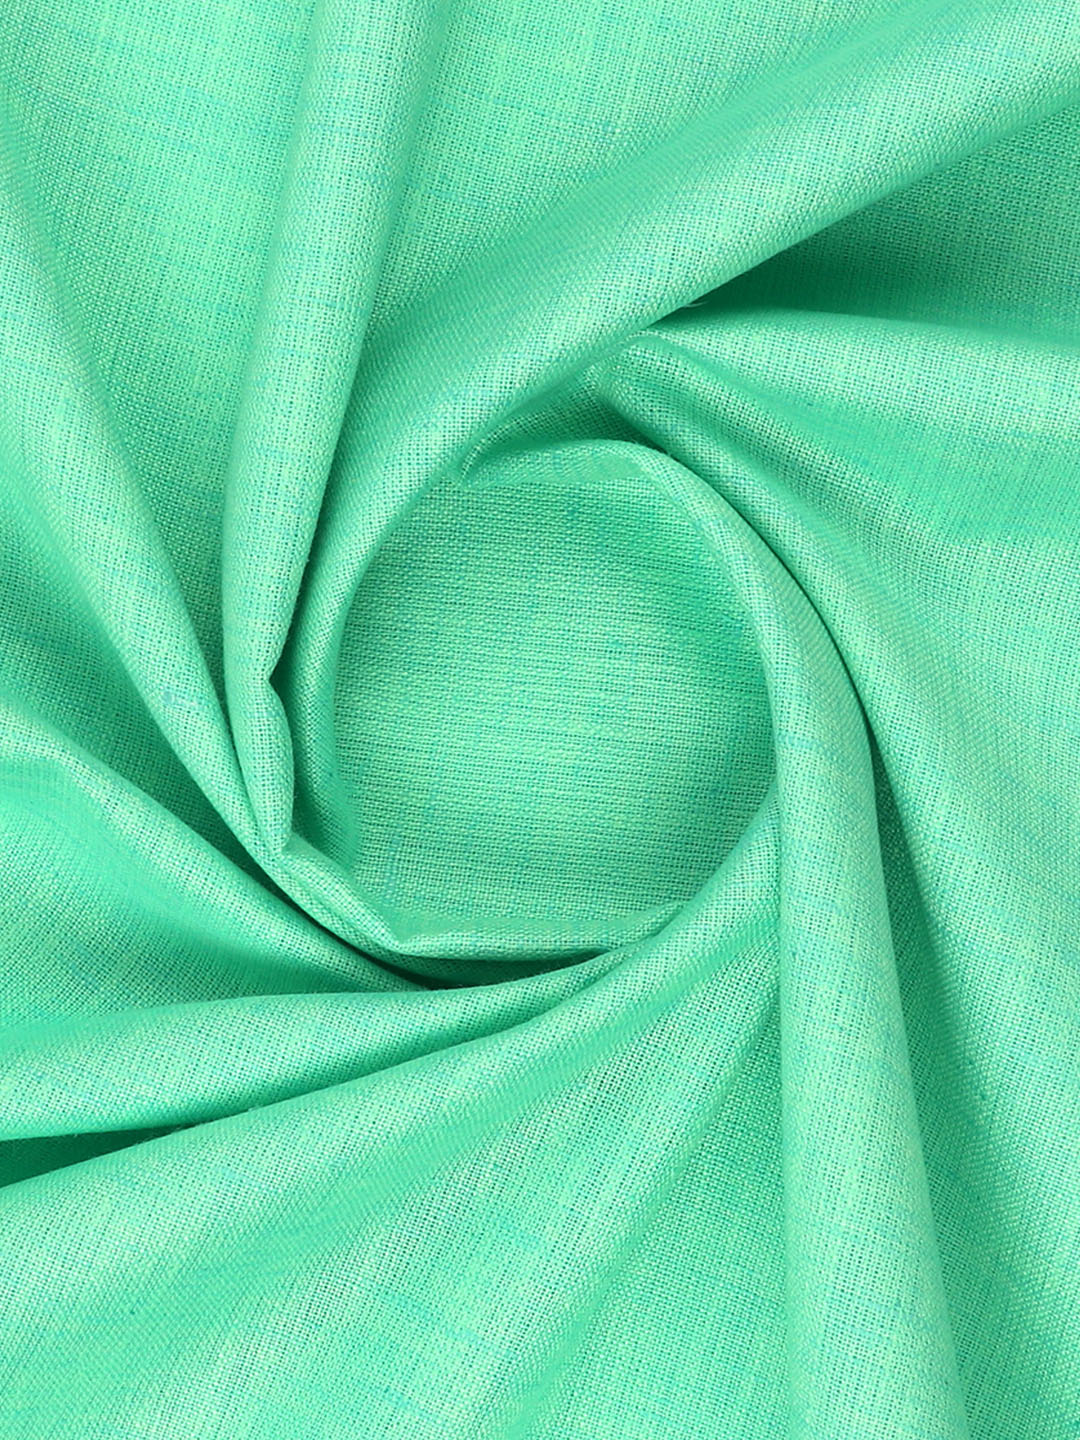 Cotton Blend Lite Green Colour Kurtha Fabric Lampus - CAPC1160-45